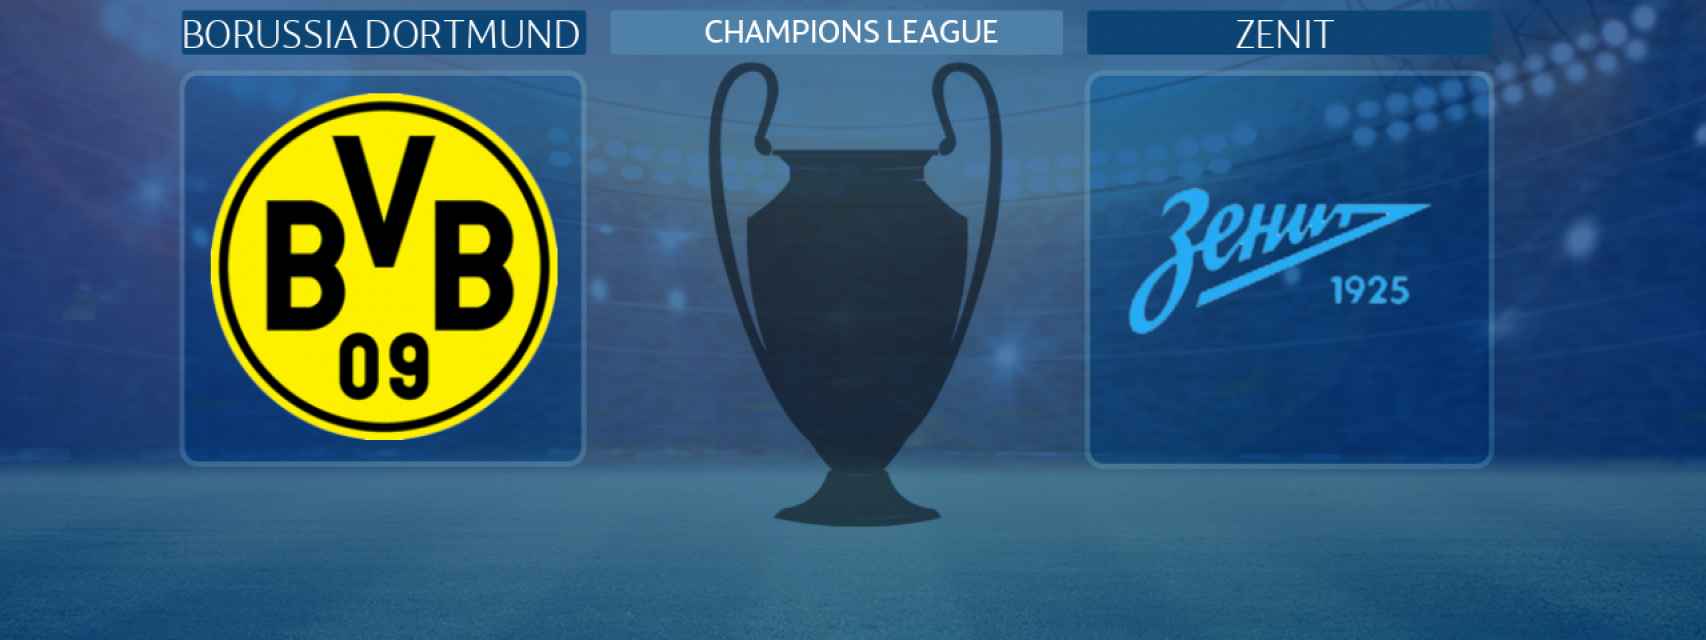 Borussia Dortmund - Zenit, partido de la Champions League